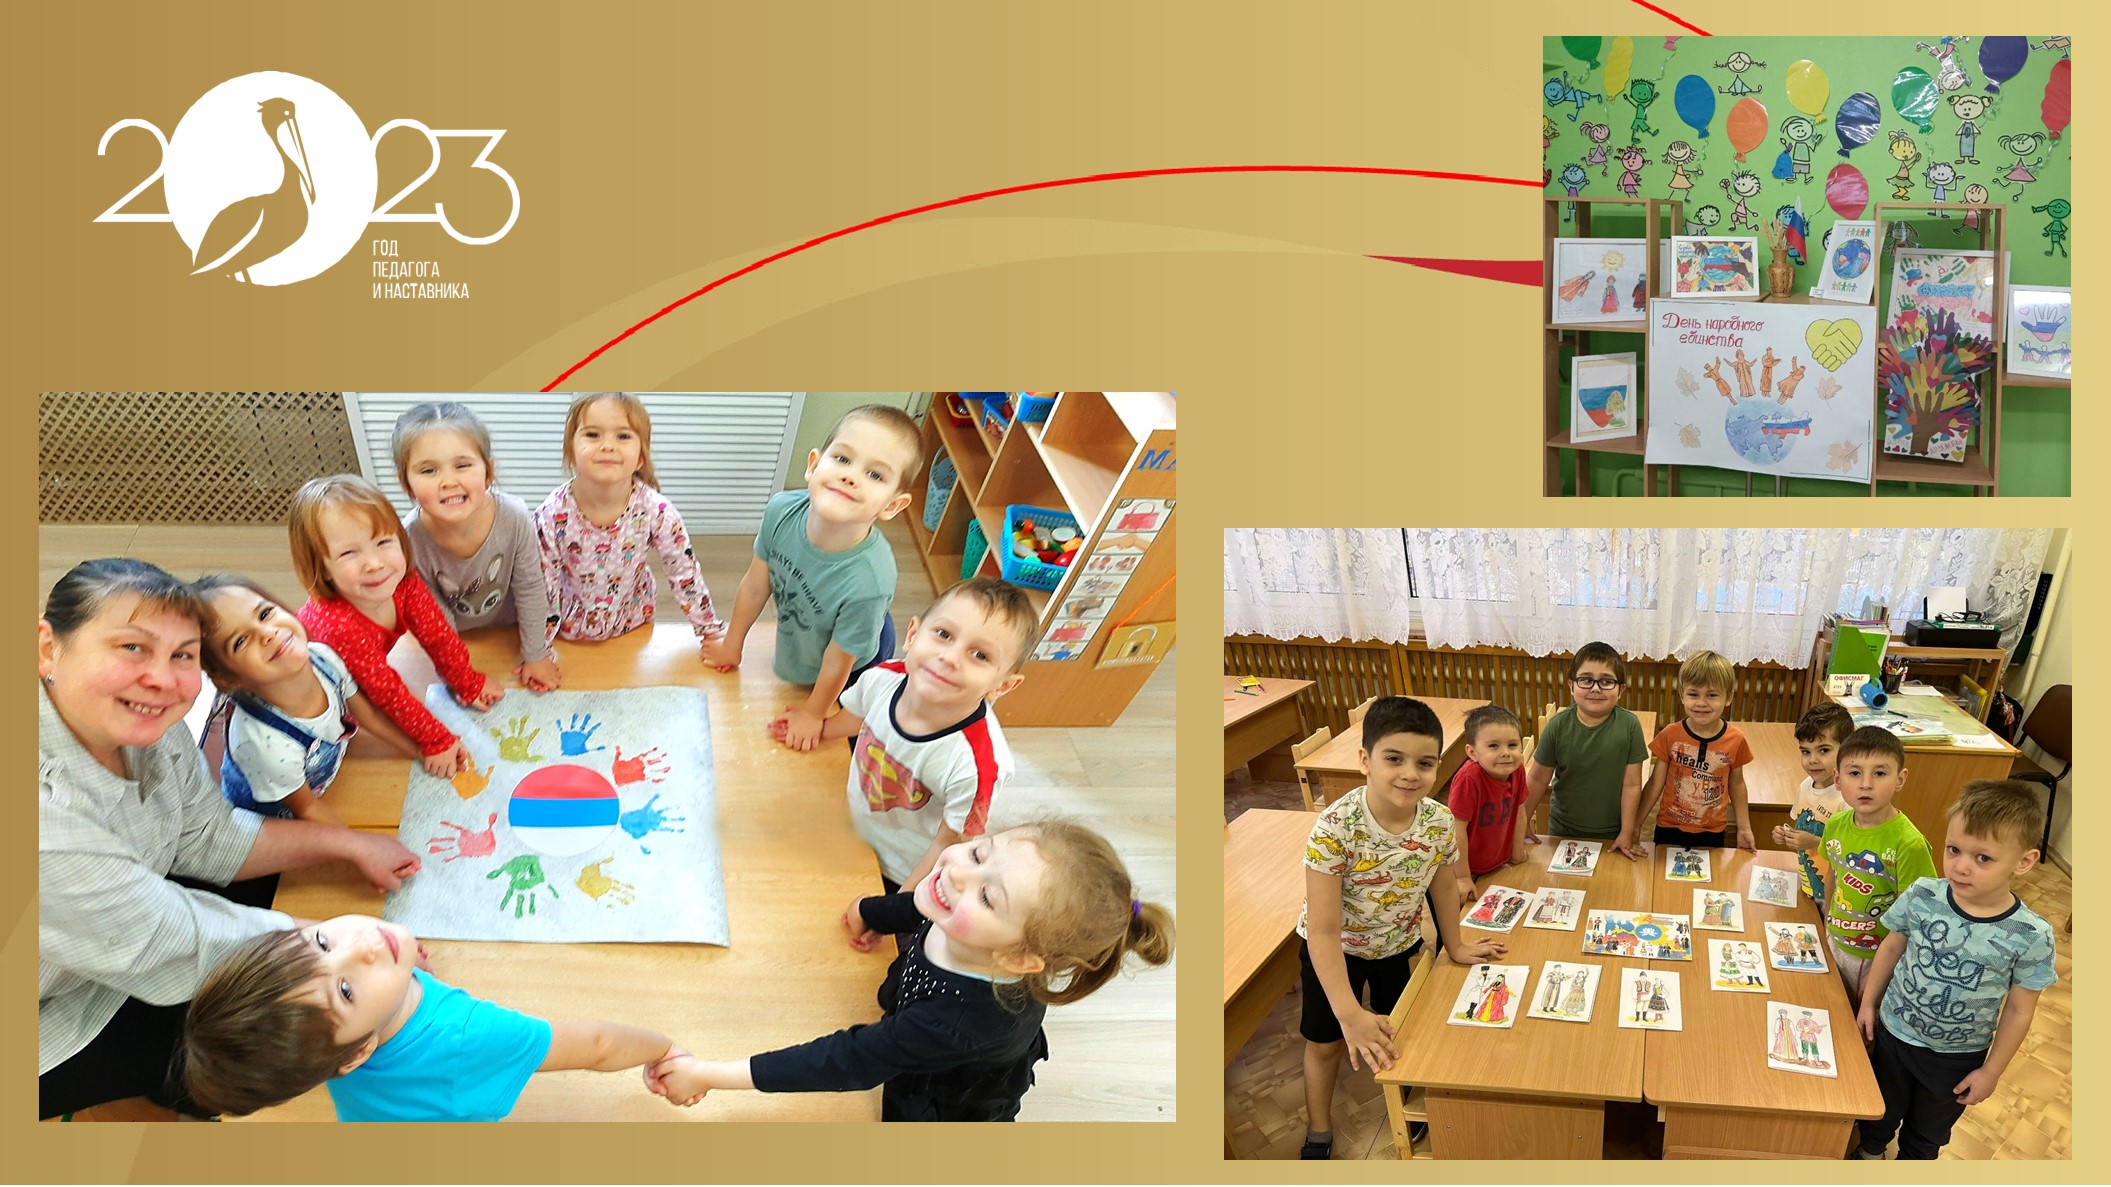 Картинки на день народного единства России: открытки для детей и поздравления на 4 ноября 